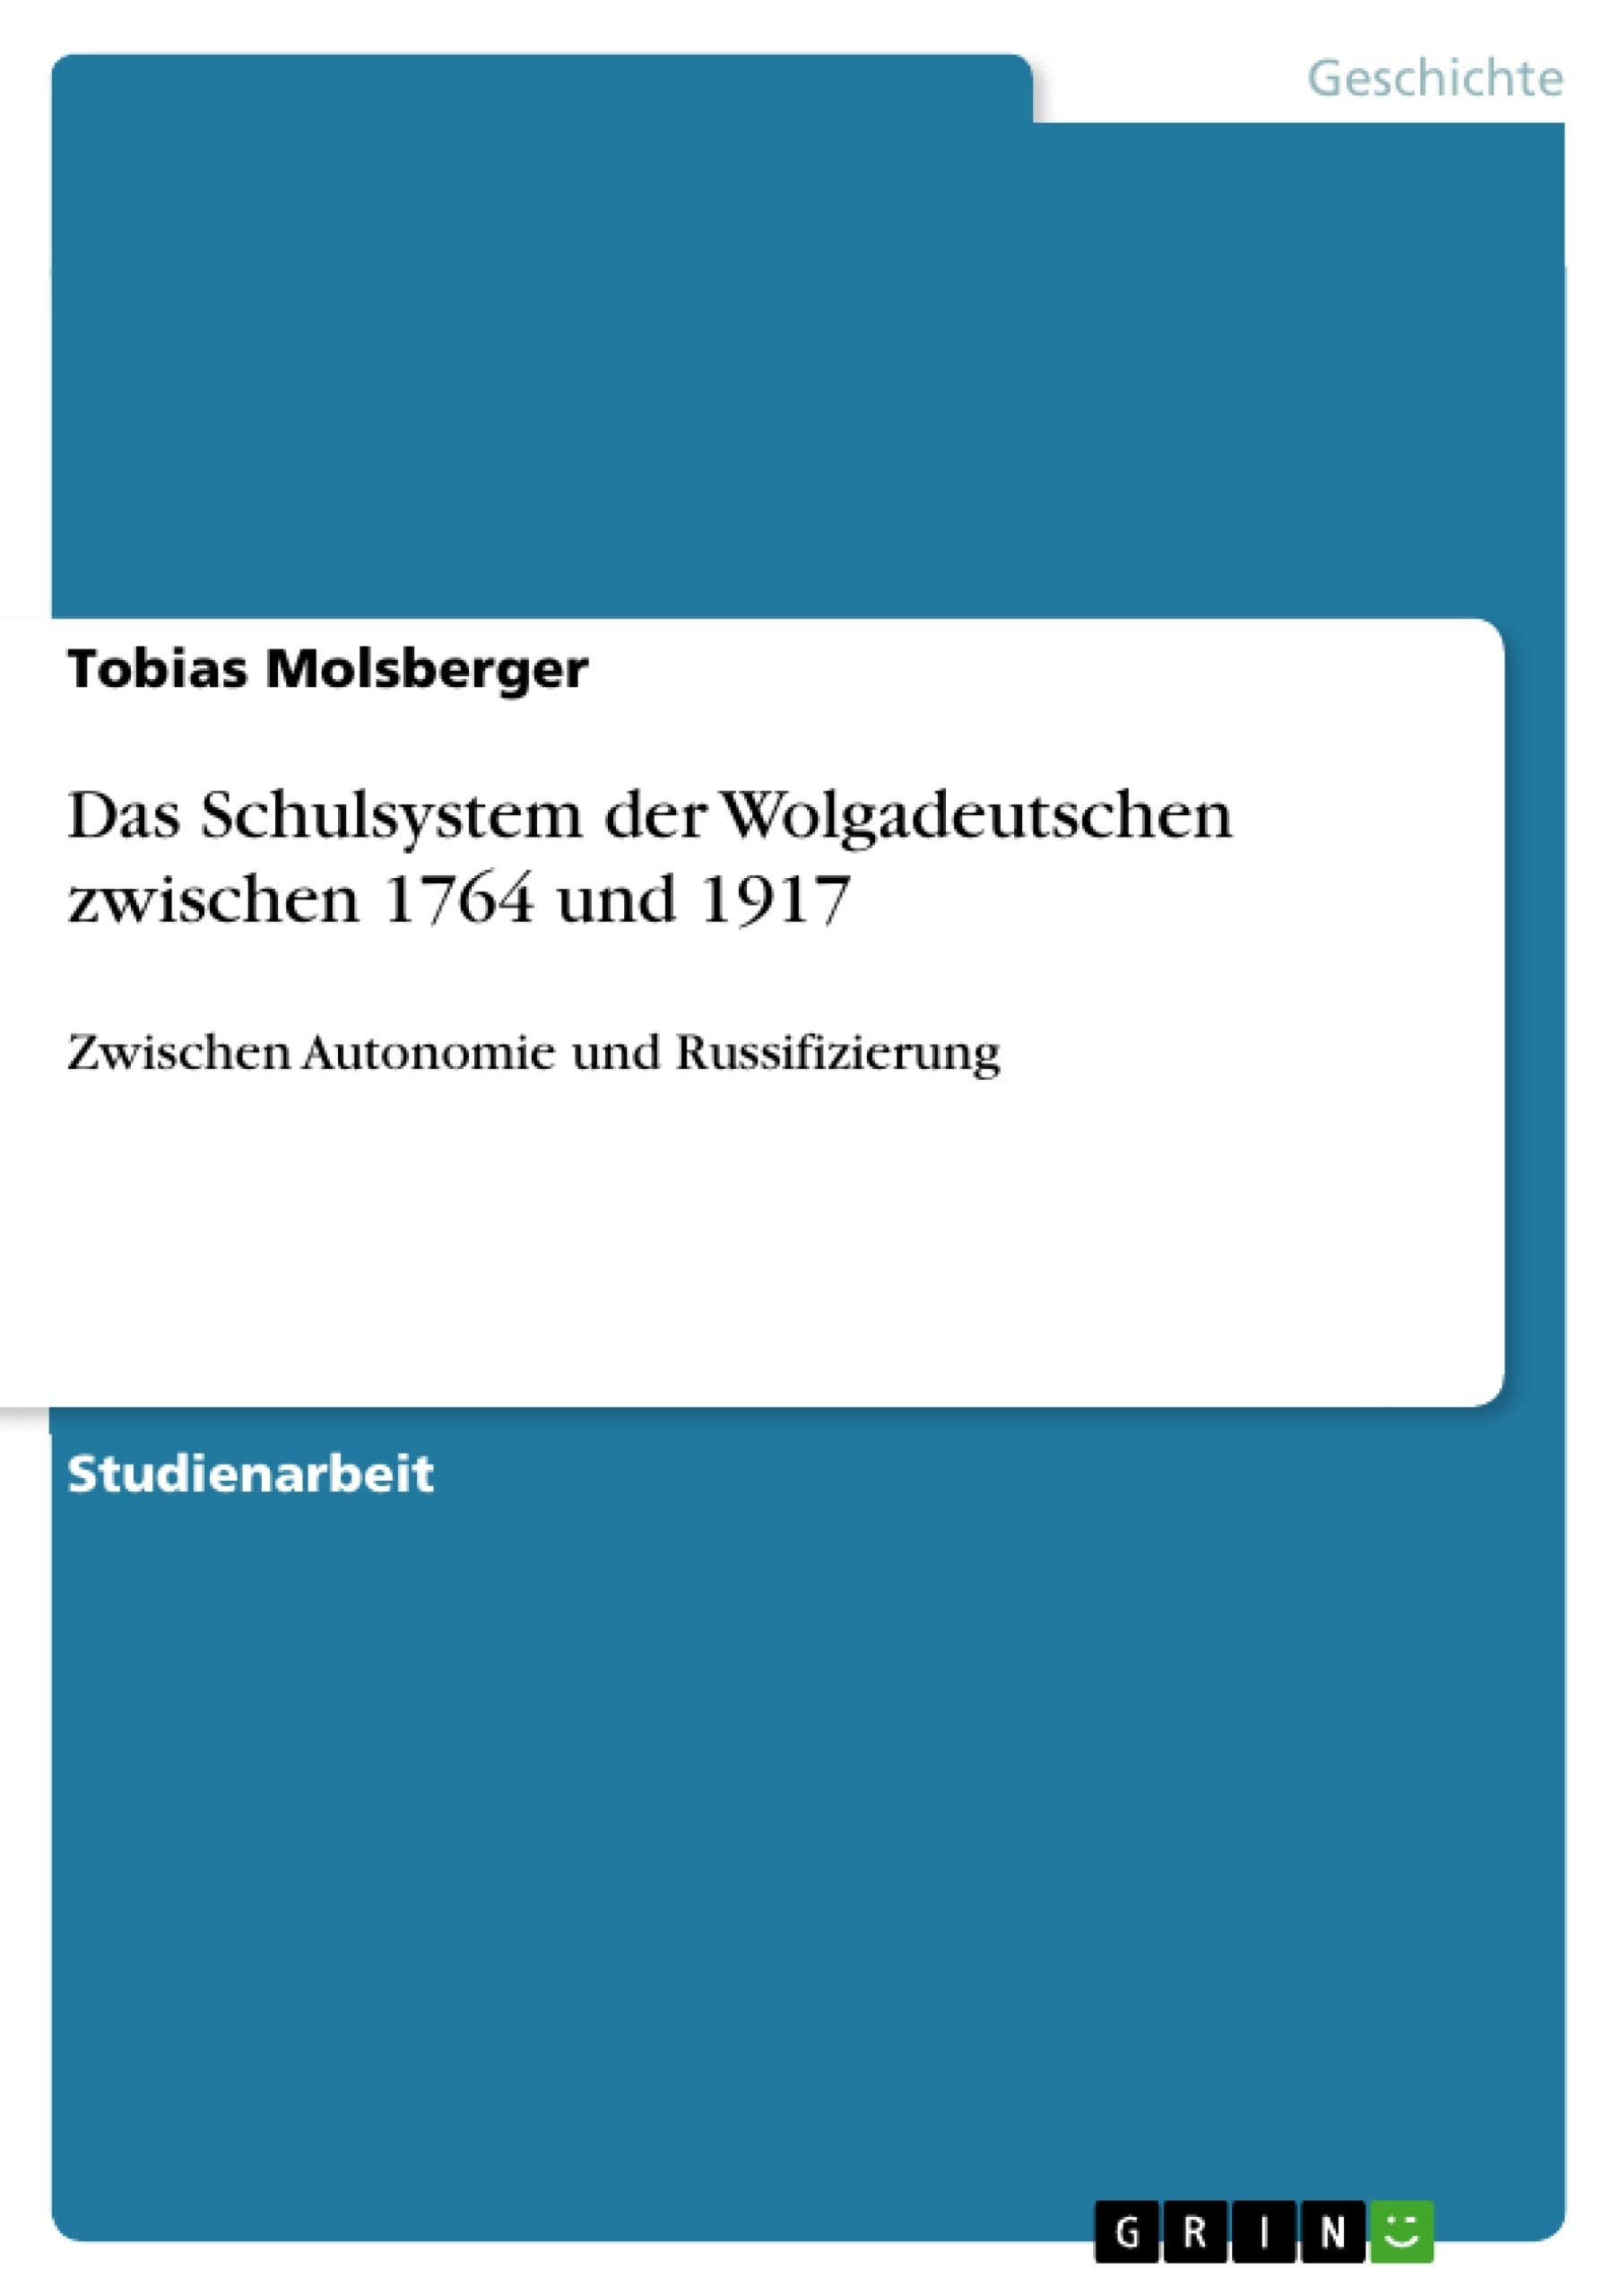 Título: Das Schulsystem der Wolgadeutschen zwischen 1764 und 1917